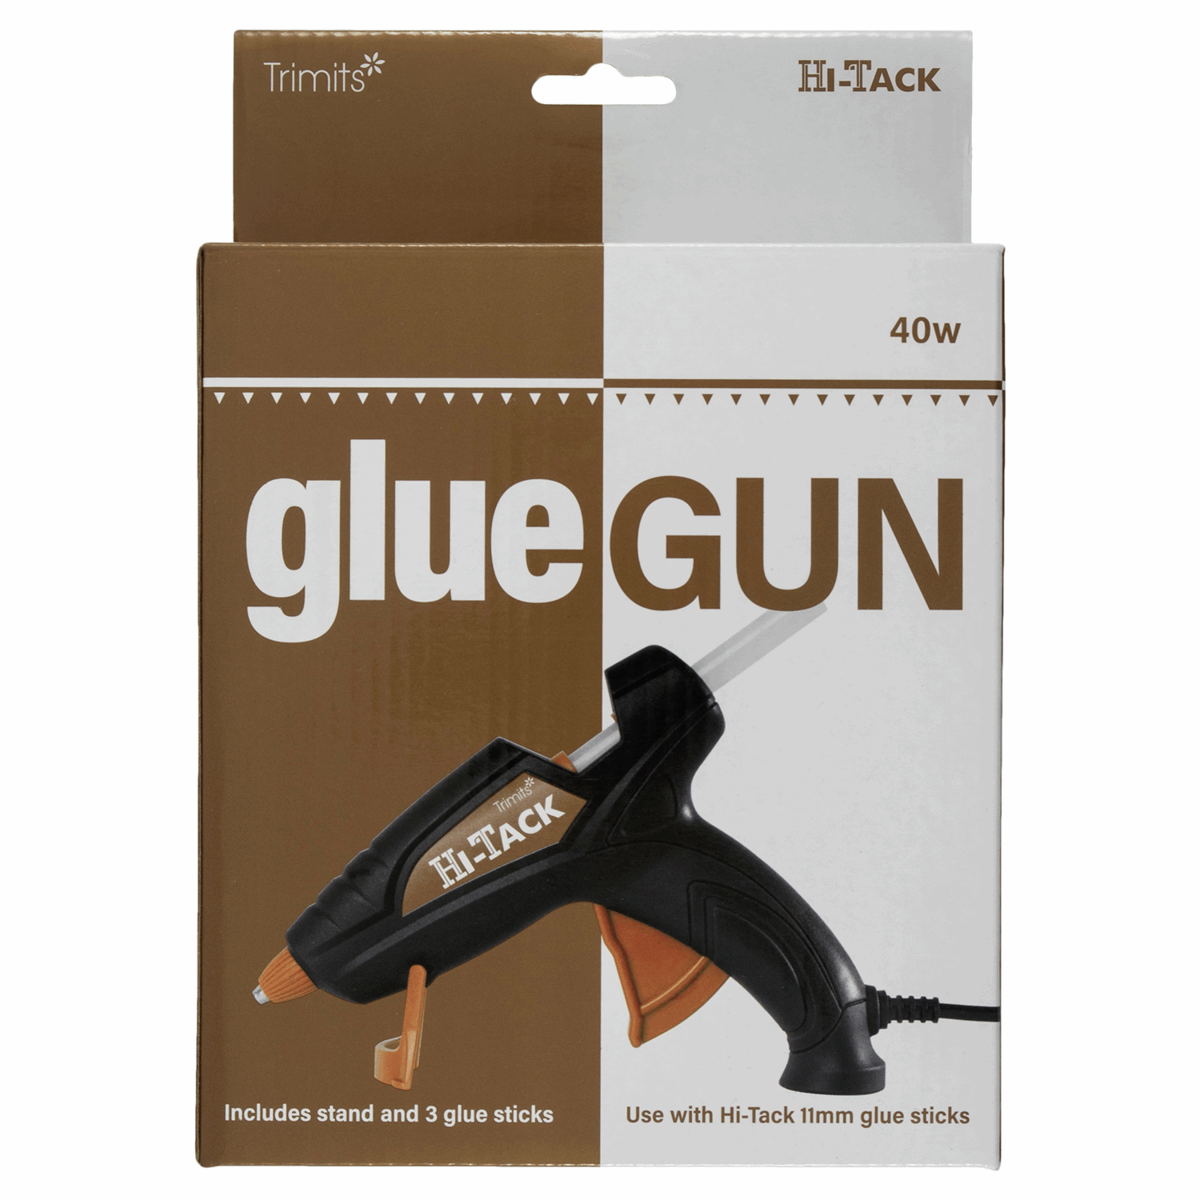 Trimits Hi-Tack Glue Gun (MG140) Large 40w / Includes stand and 3 x glue sticks